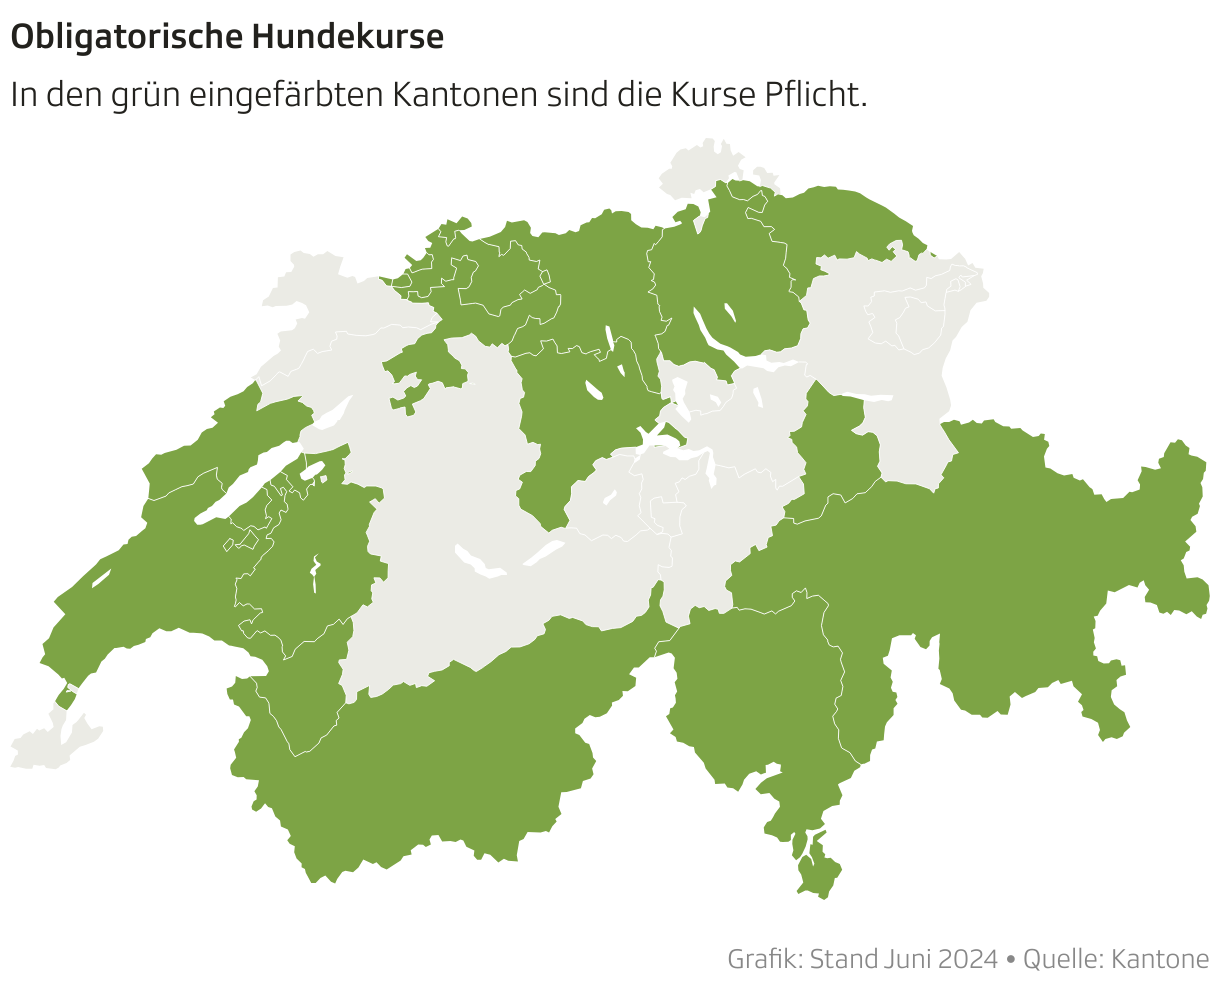 Schweizerkarte. Roteingefärbte Kantone, wo Hundekurse obligatorisch sind. 